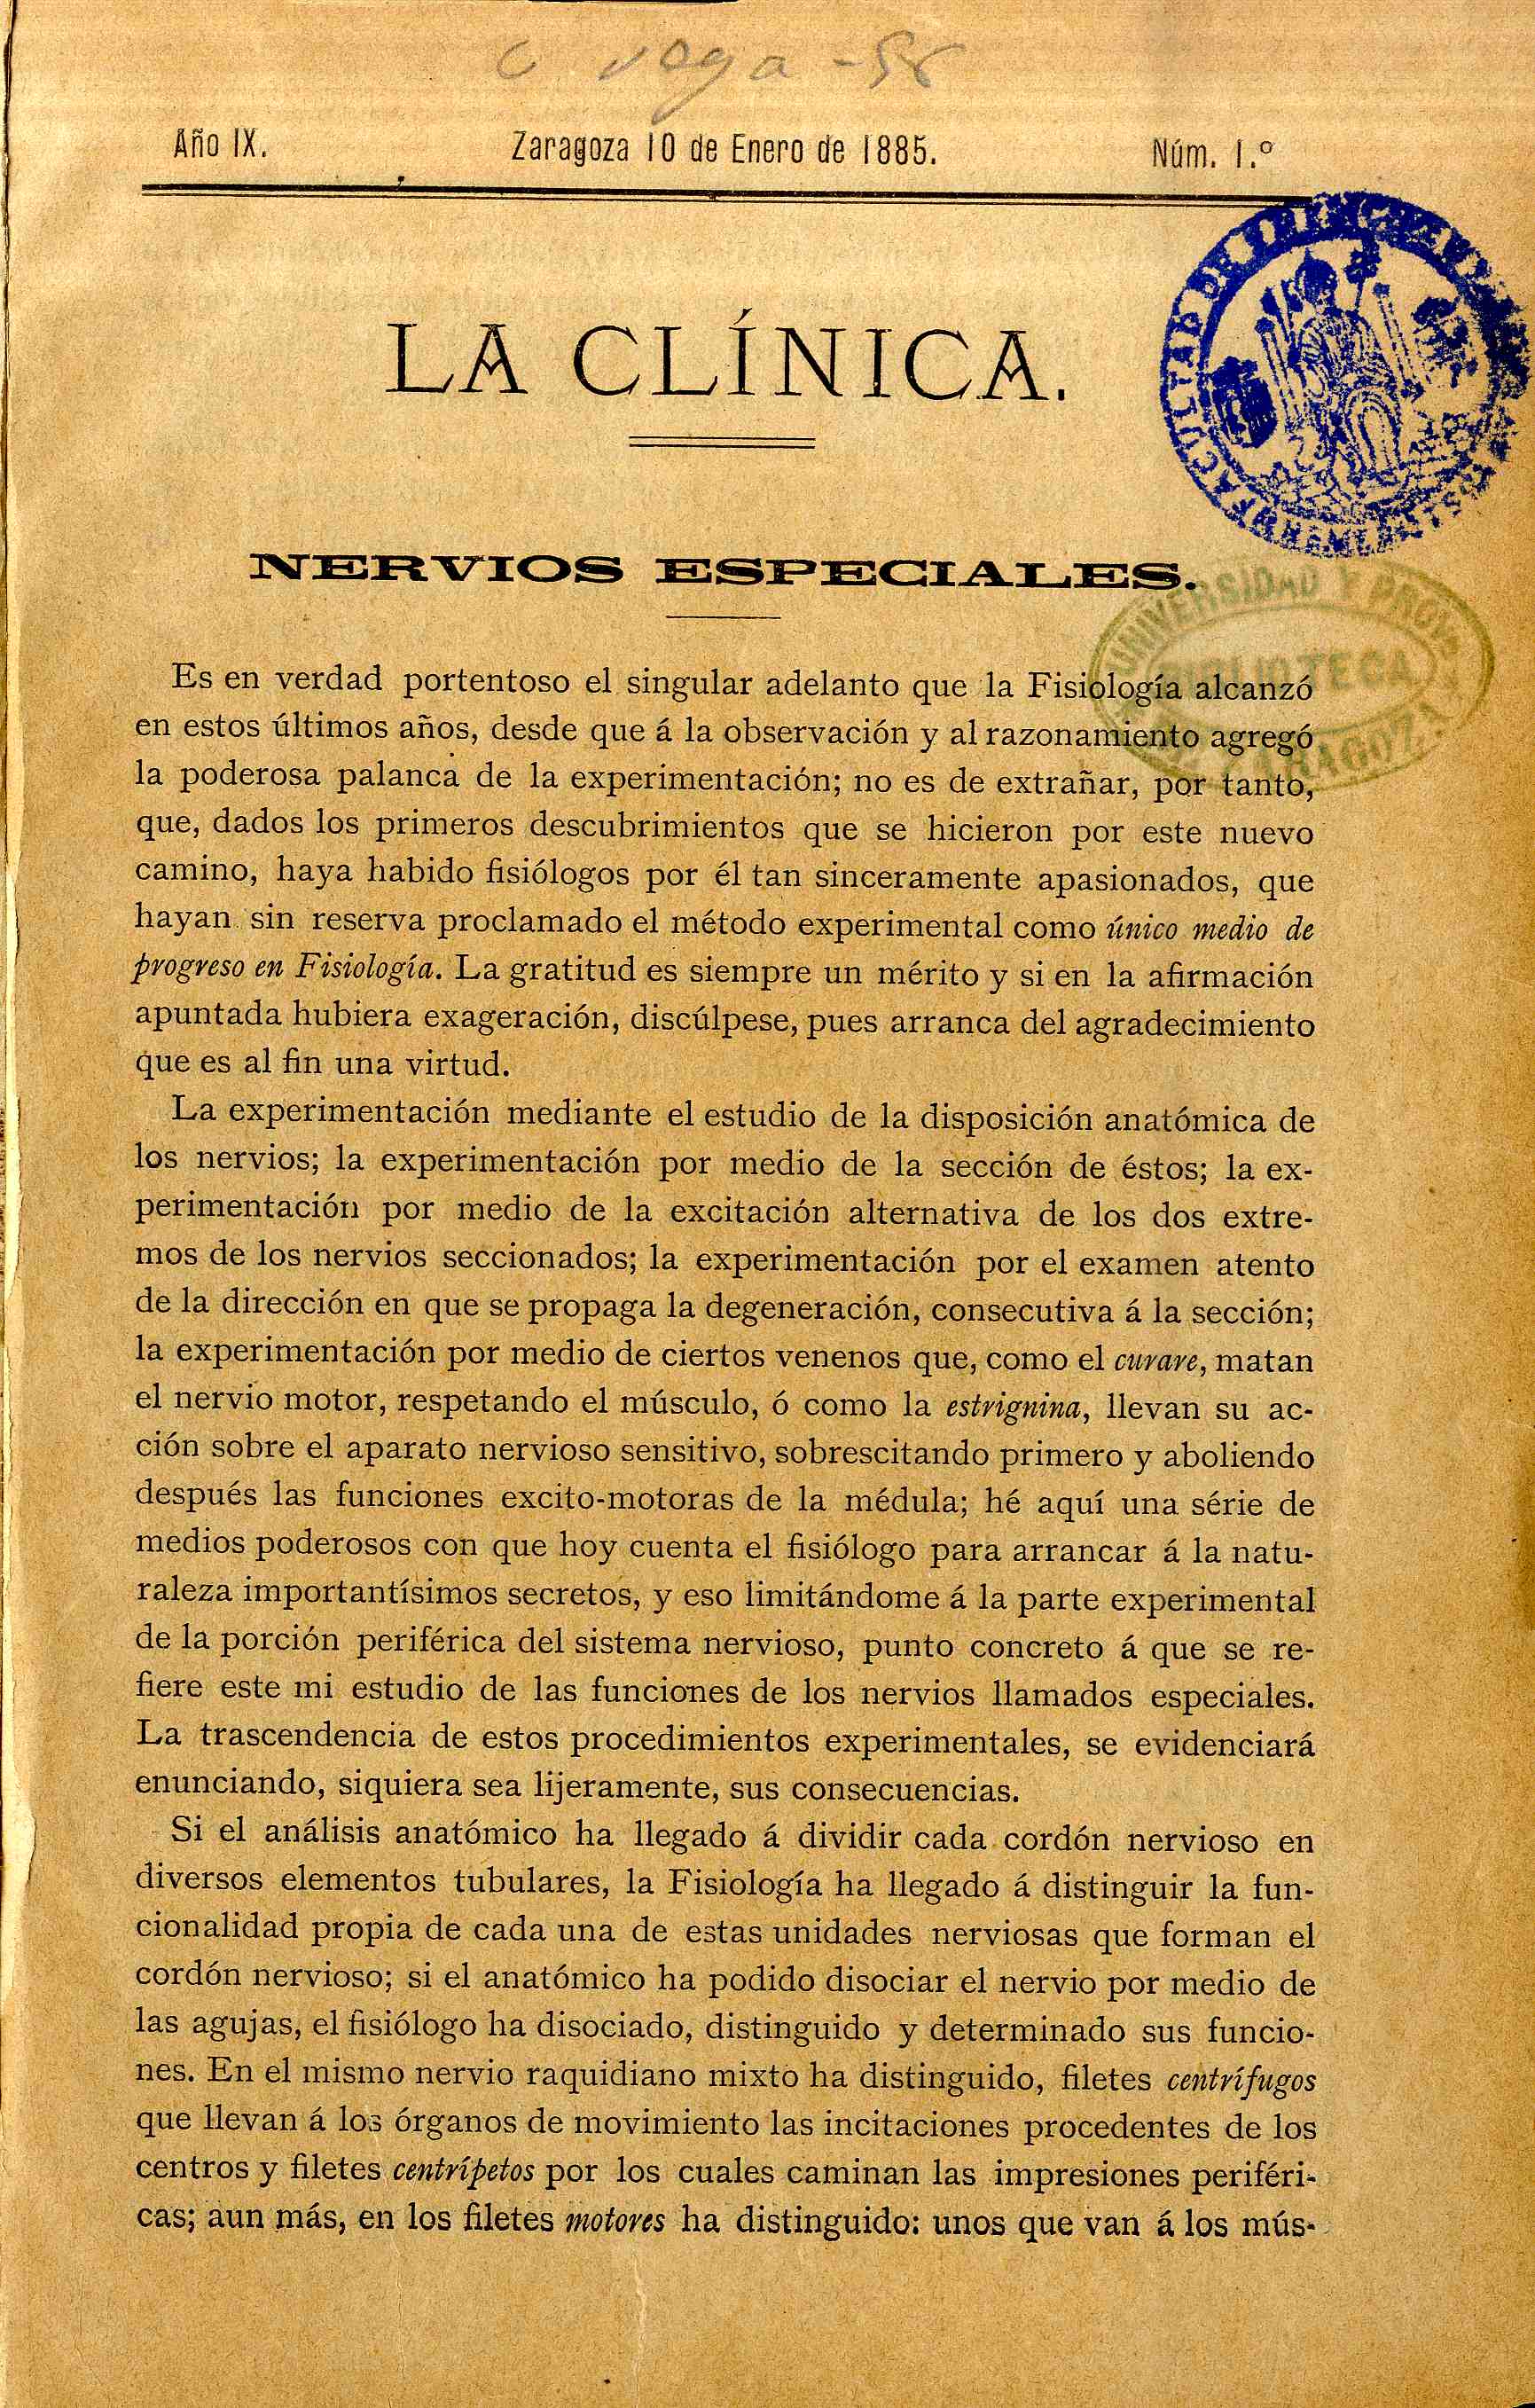 La Clínica (Zaragoza), IX (1885)